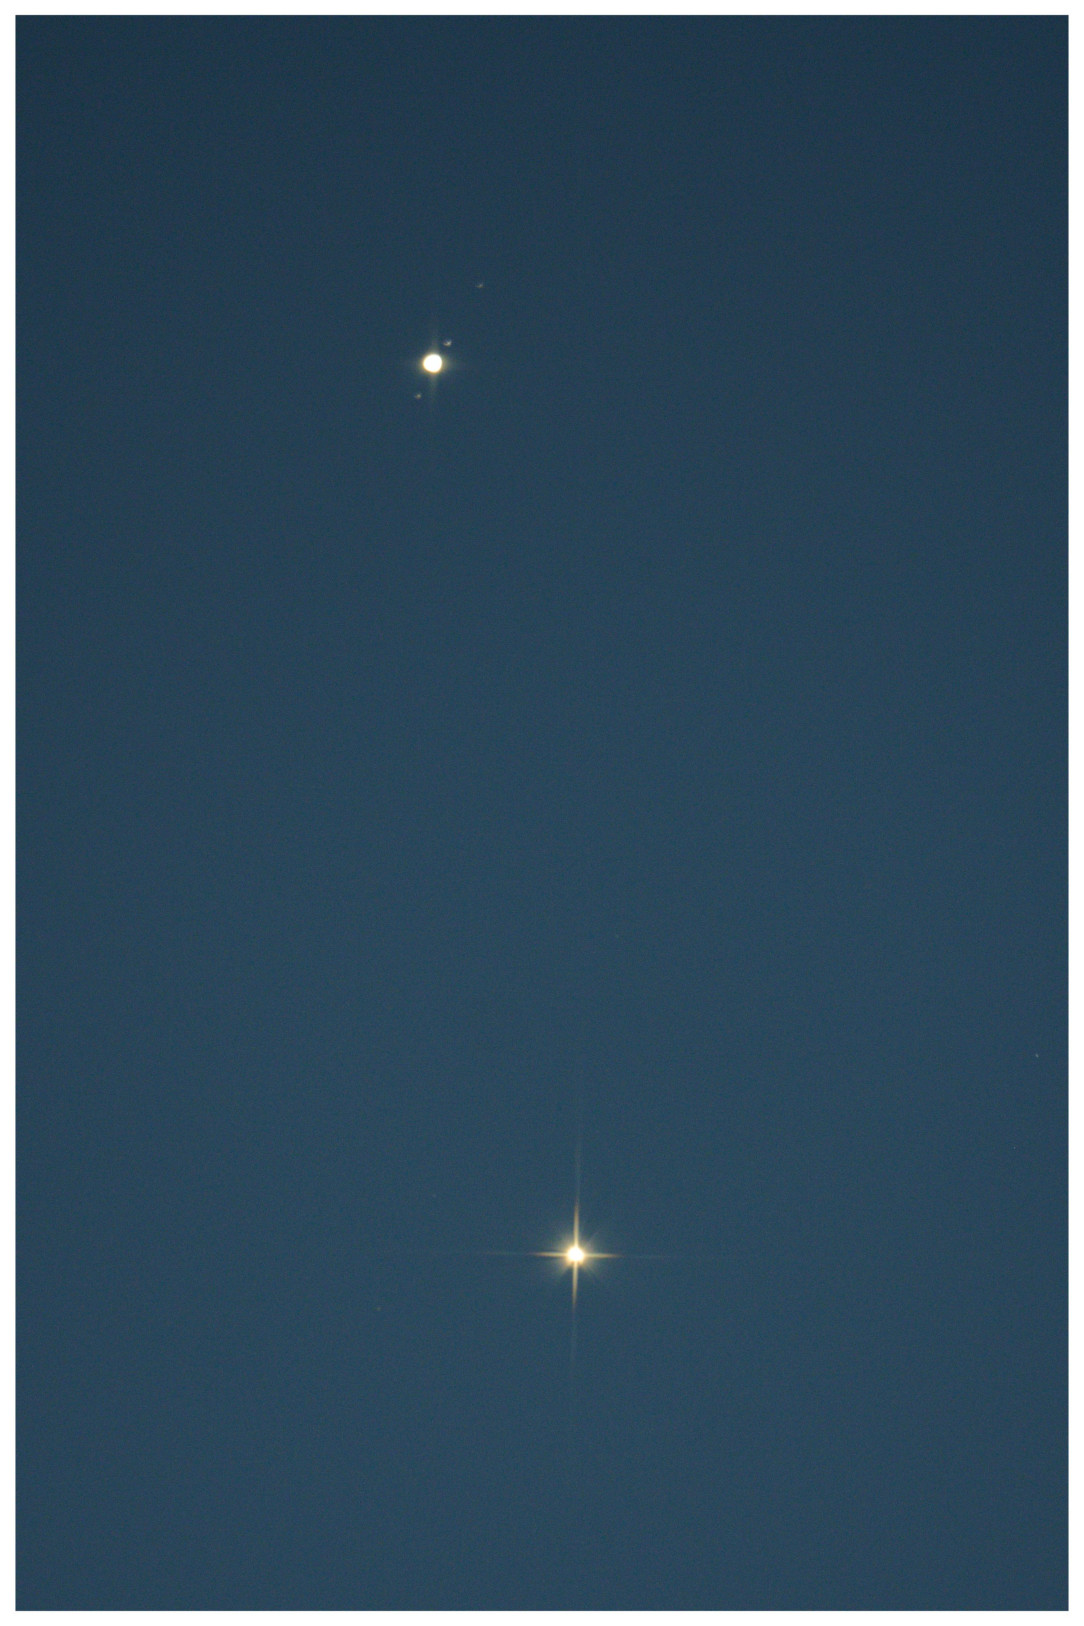 Venus Jupiter conjunction